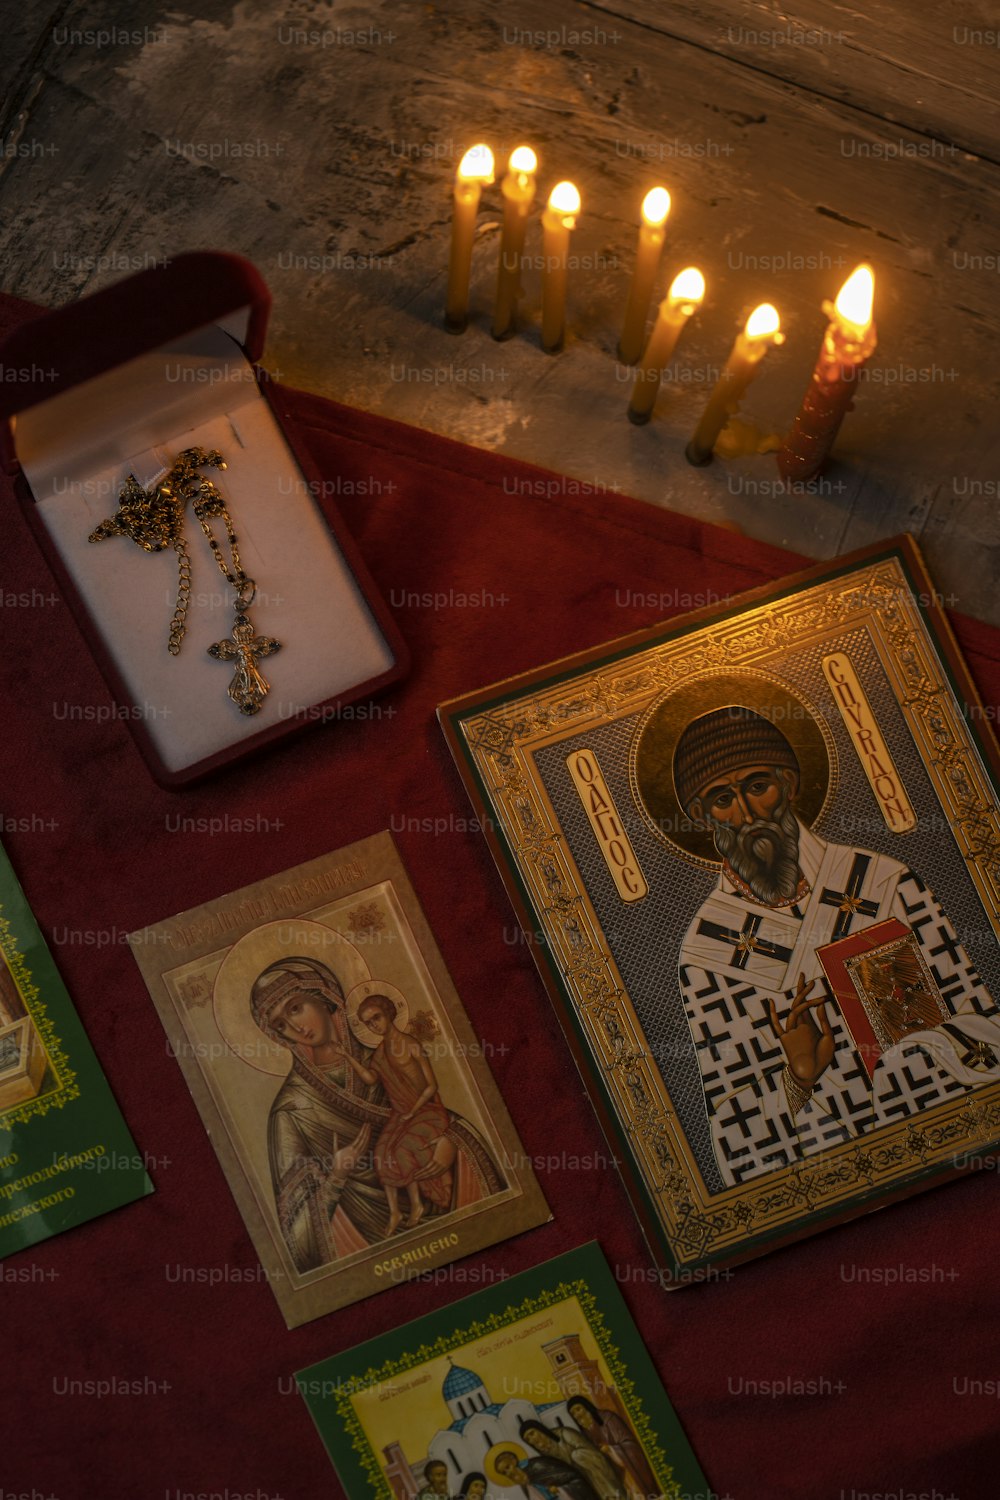 Una foto de un sacerdote rodeado de velas